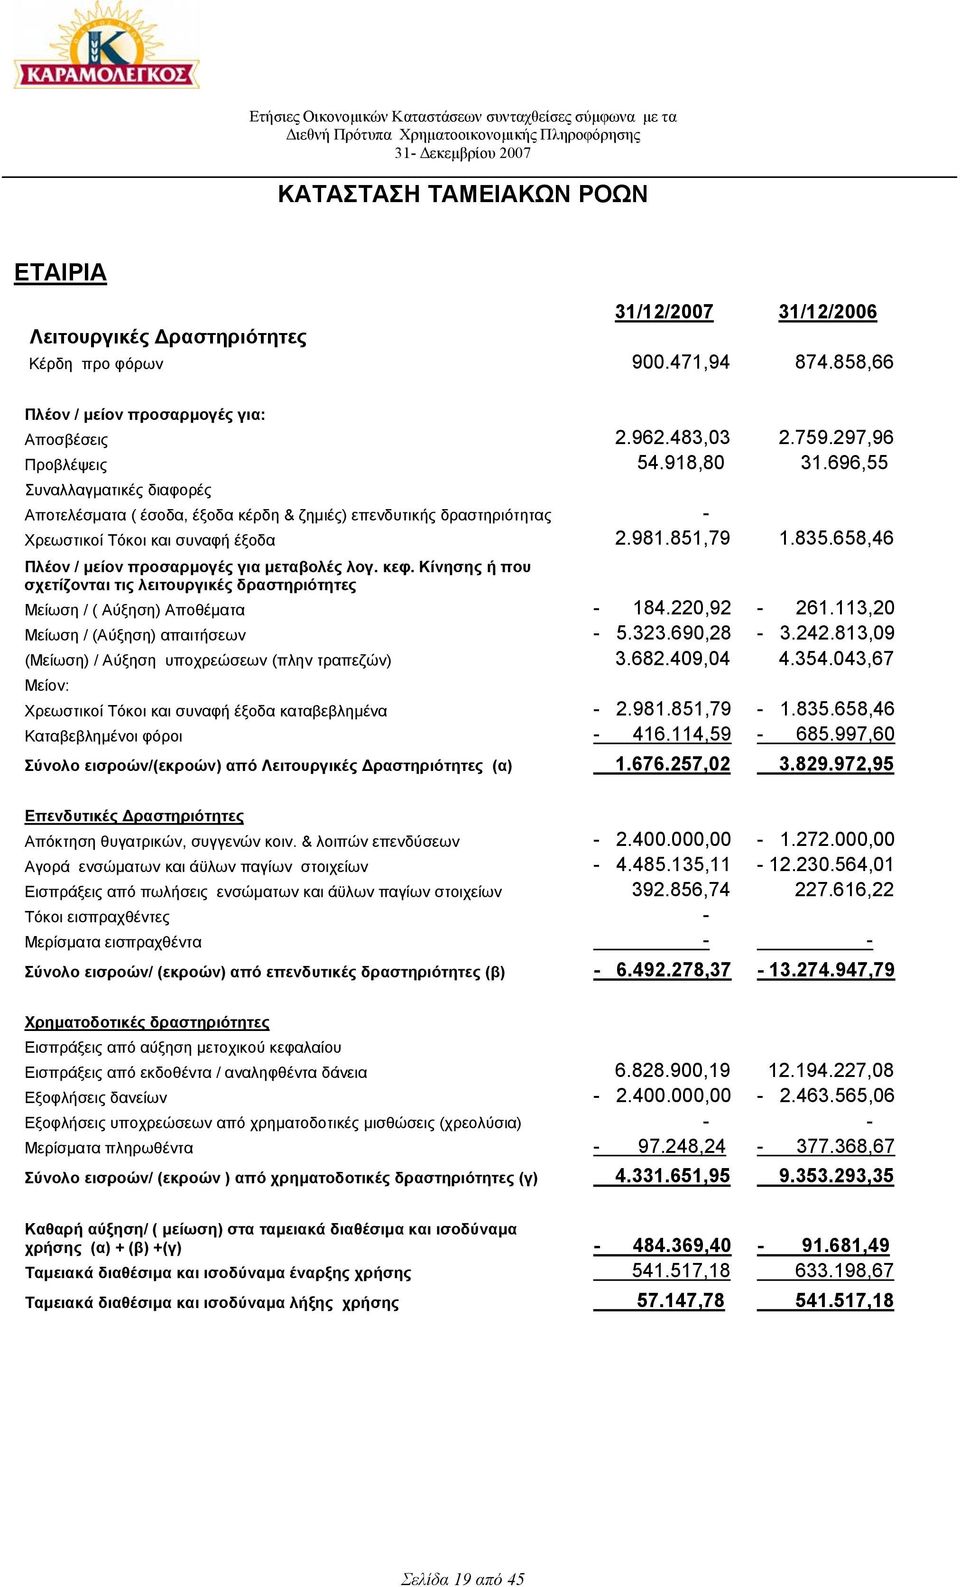 696,55 Συναλλαγµατικές διαφορές Αποτελέσµατα ( έσοδα, έξοδα κέρδη & ζηµιές) επενδυτικής δραστηριότητας - Χρεωστικοί Τόκοι και συναφή έξοδα 2.981.851,79 1.835.